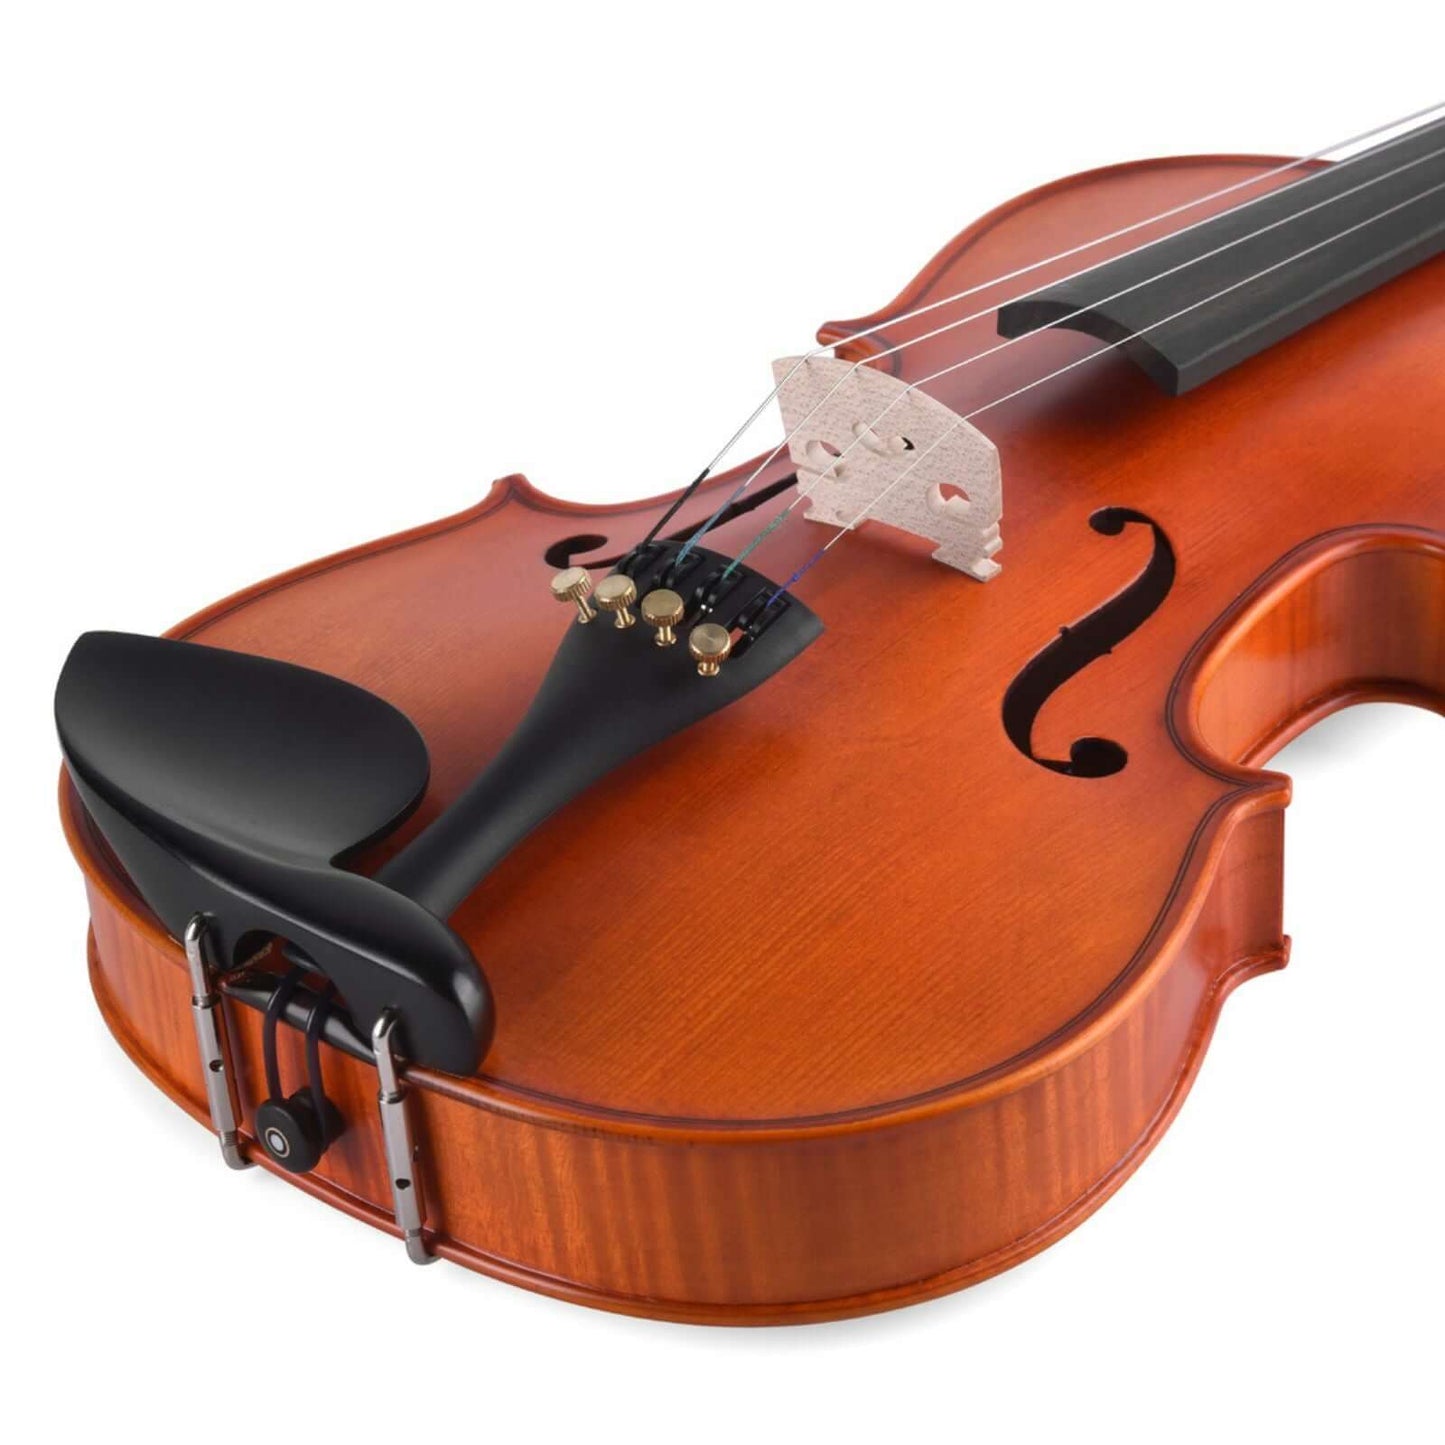 Axiom Concerto Series Violin Outfit - 4/4 Size School Violin